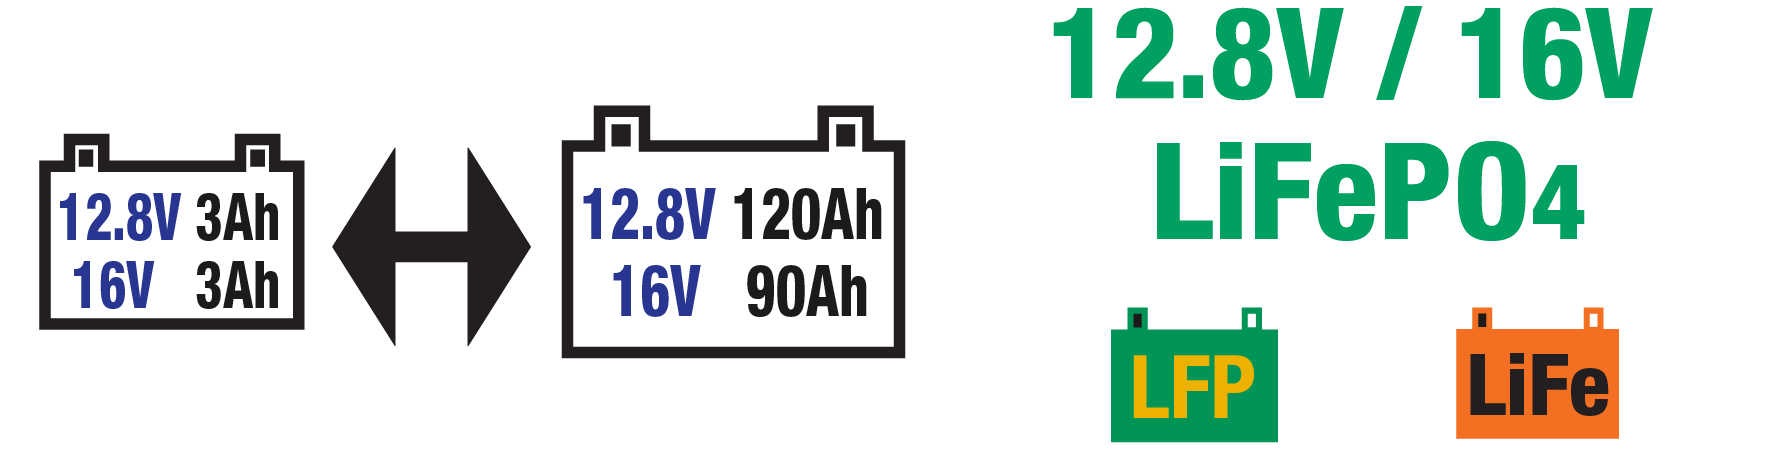 le lifepo4 chargeur est idéal pour les batteries LiFeP04/LFP de 12.8V/16V